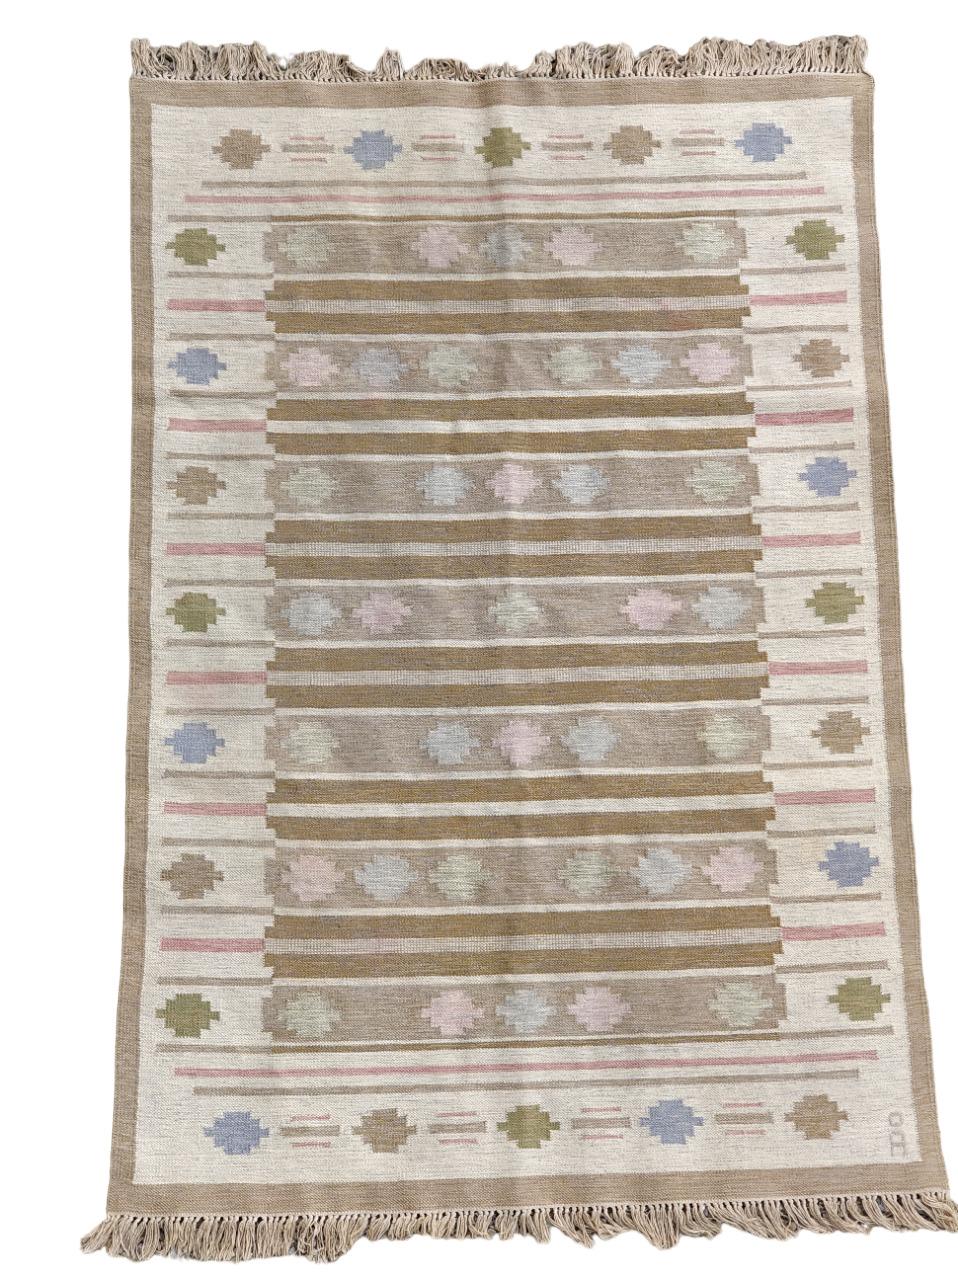 
Flachgewebter Kilim-Teppich der schwedischen Textildesignerin Anna Johanna Ångström mit geometrischen Mustern und Brauntönen. Mit ihrer Unterschrift
Anna Johanna Ångström, geboren 1938, ist eine schwedische Textildesignerin, die für ihre exquisite